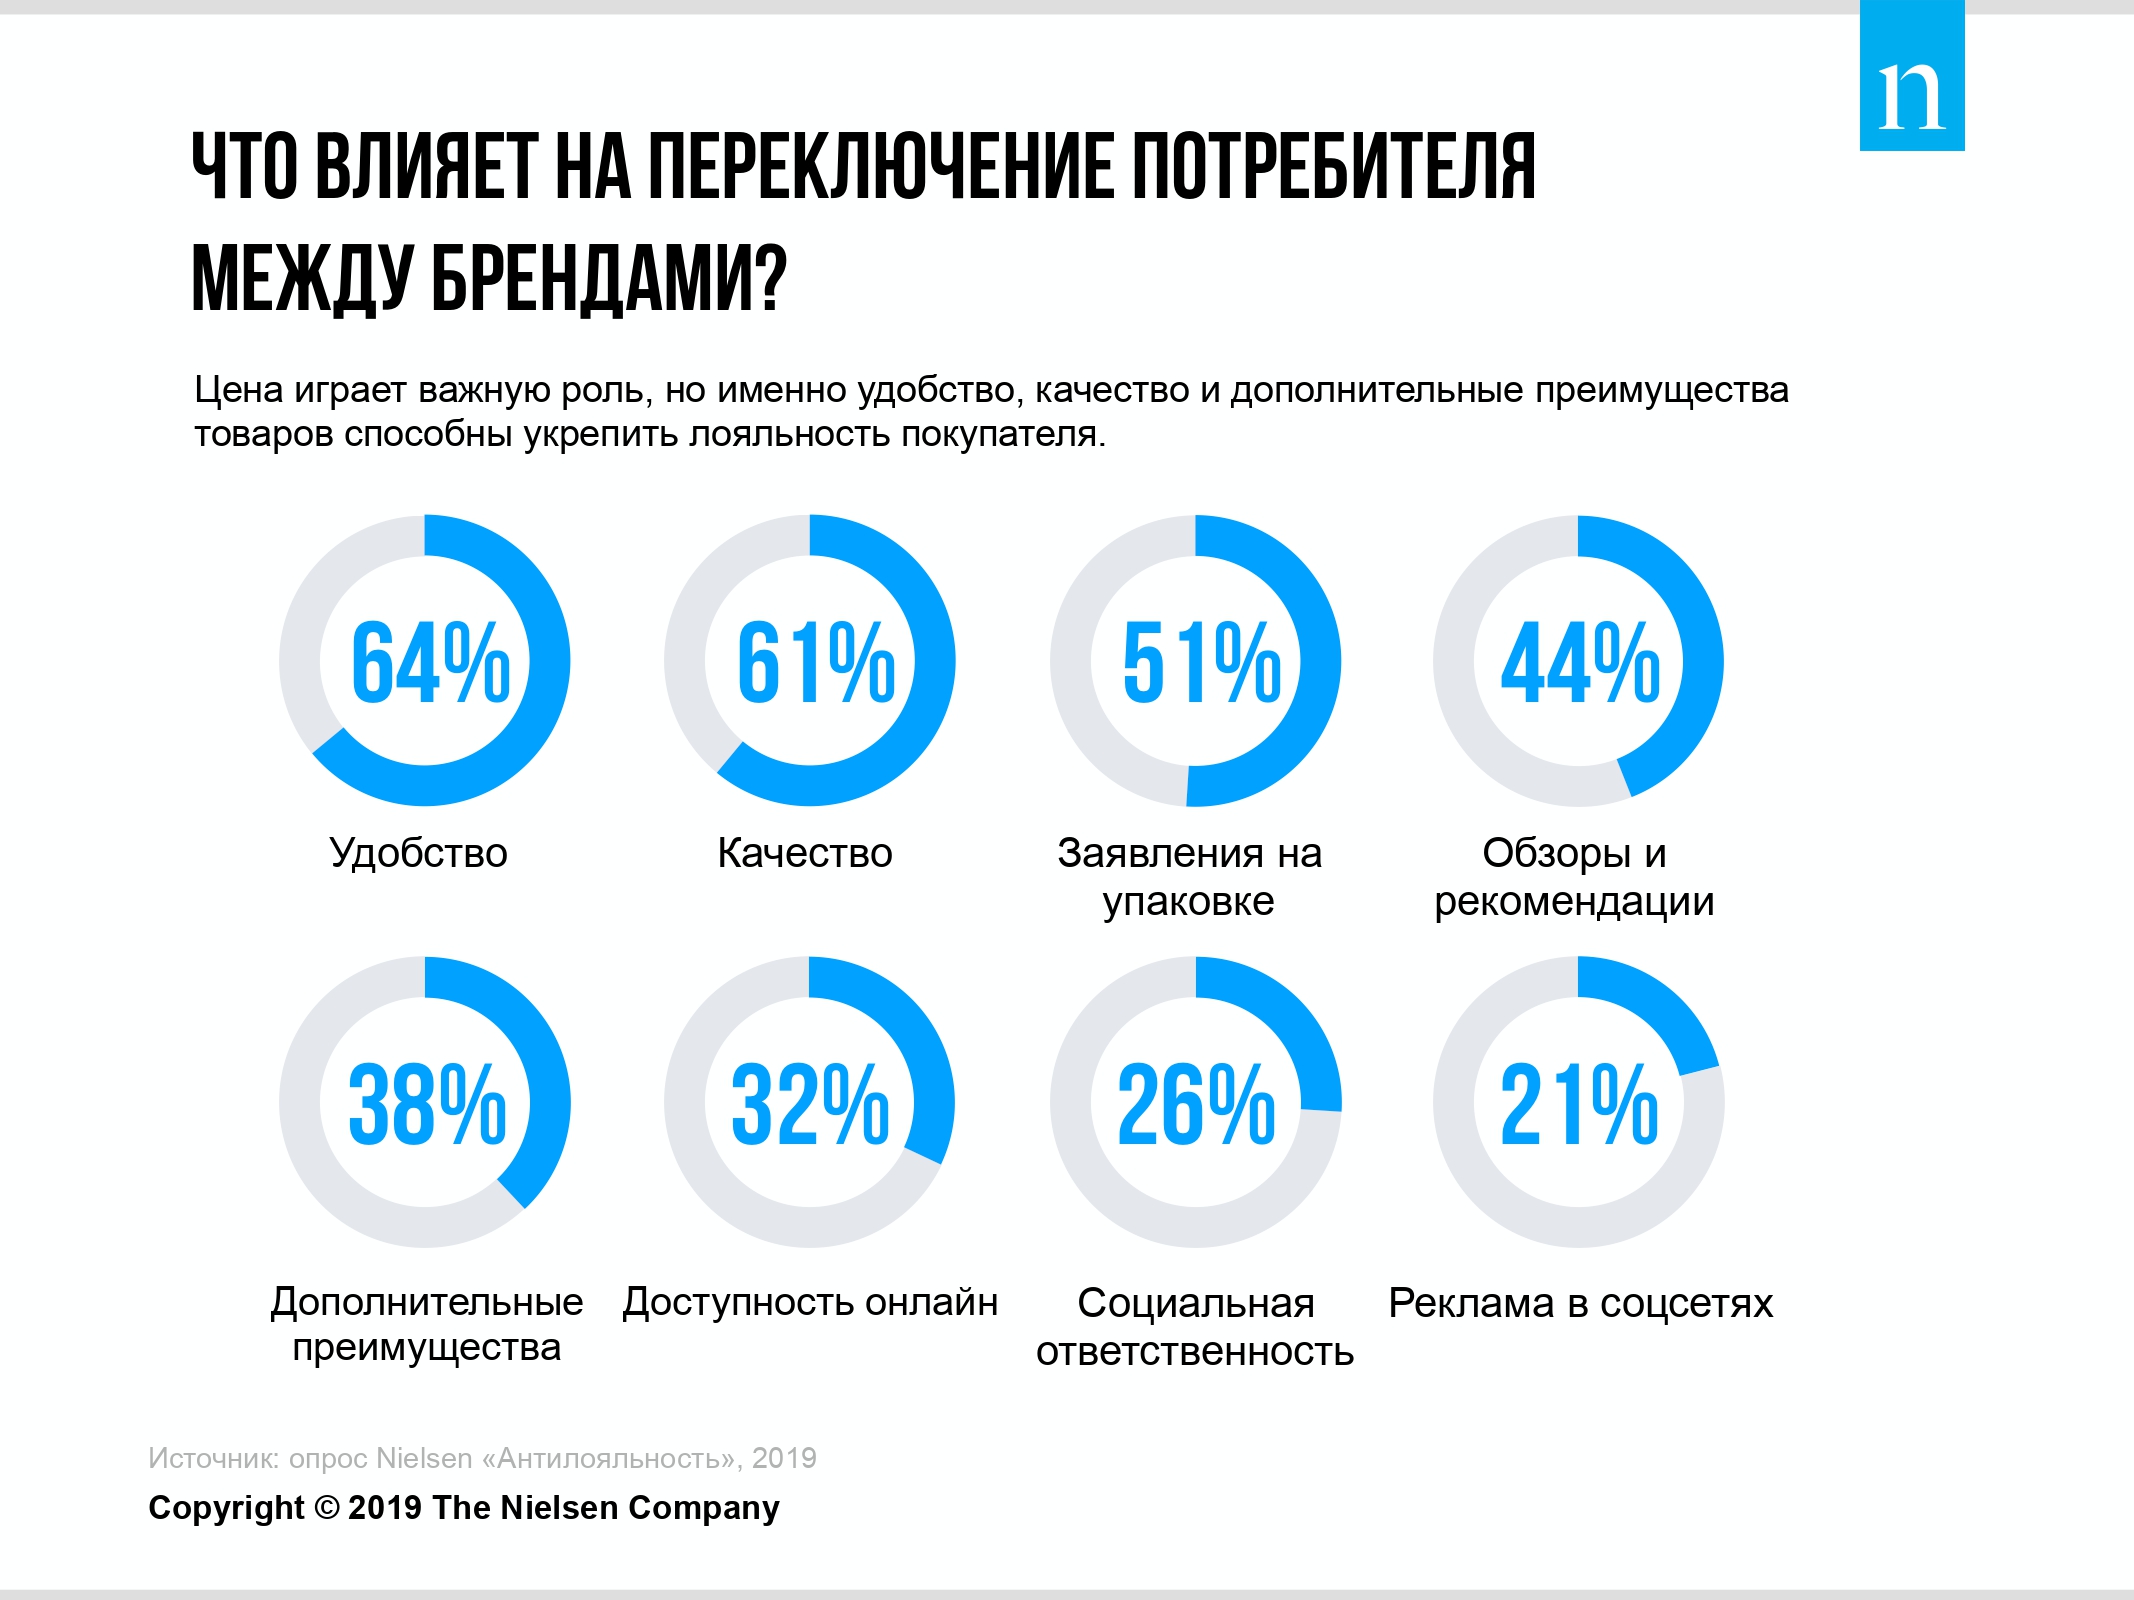 Российские потребители стали чаще переключаться между брендами